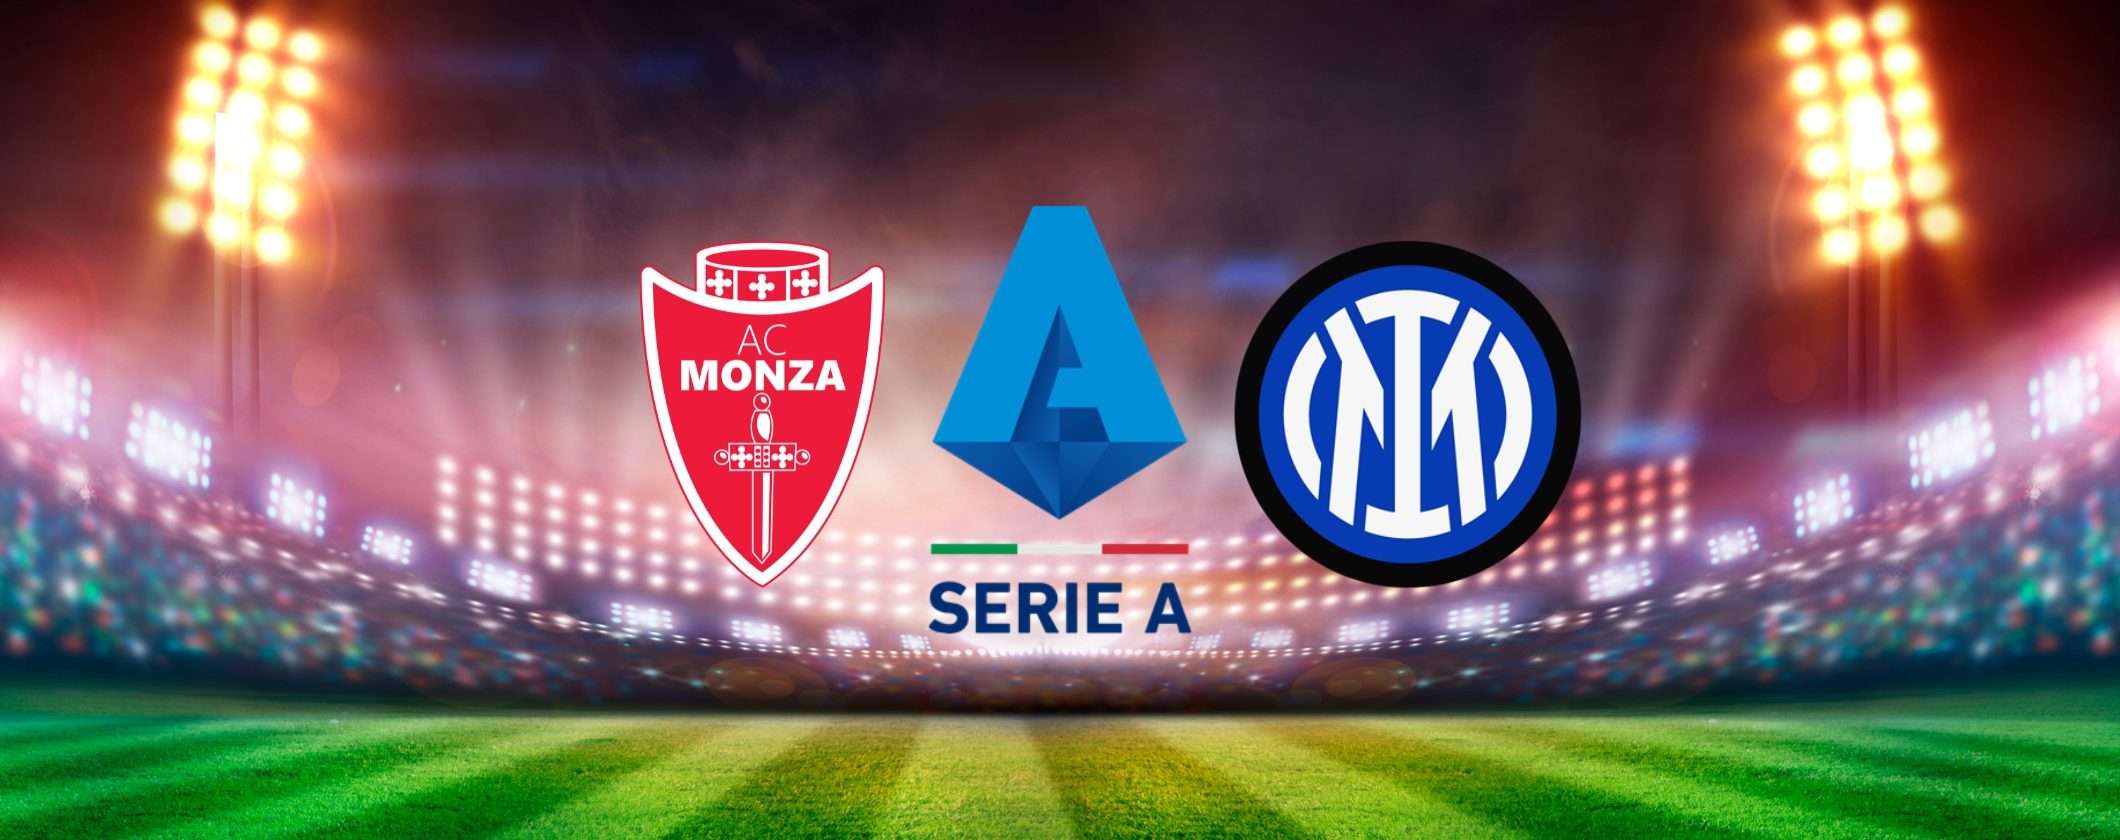 Guarda Monza-Inter dall'estero in streaming con questa VPN